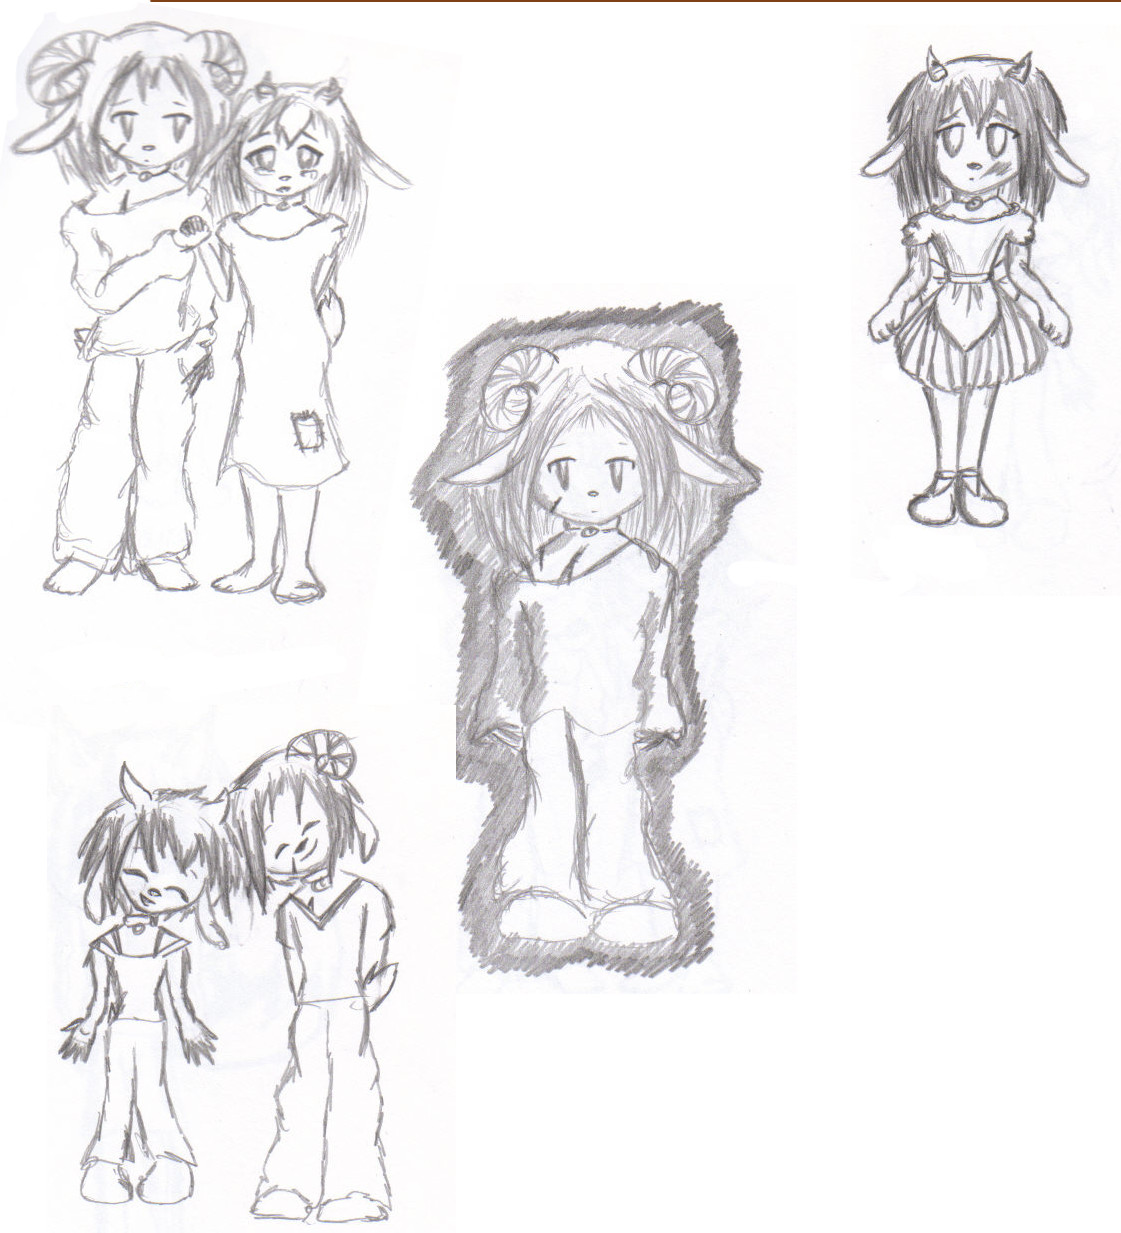 Xibbito and Amairi sketches by Ariya_Eretsee